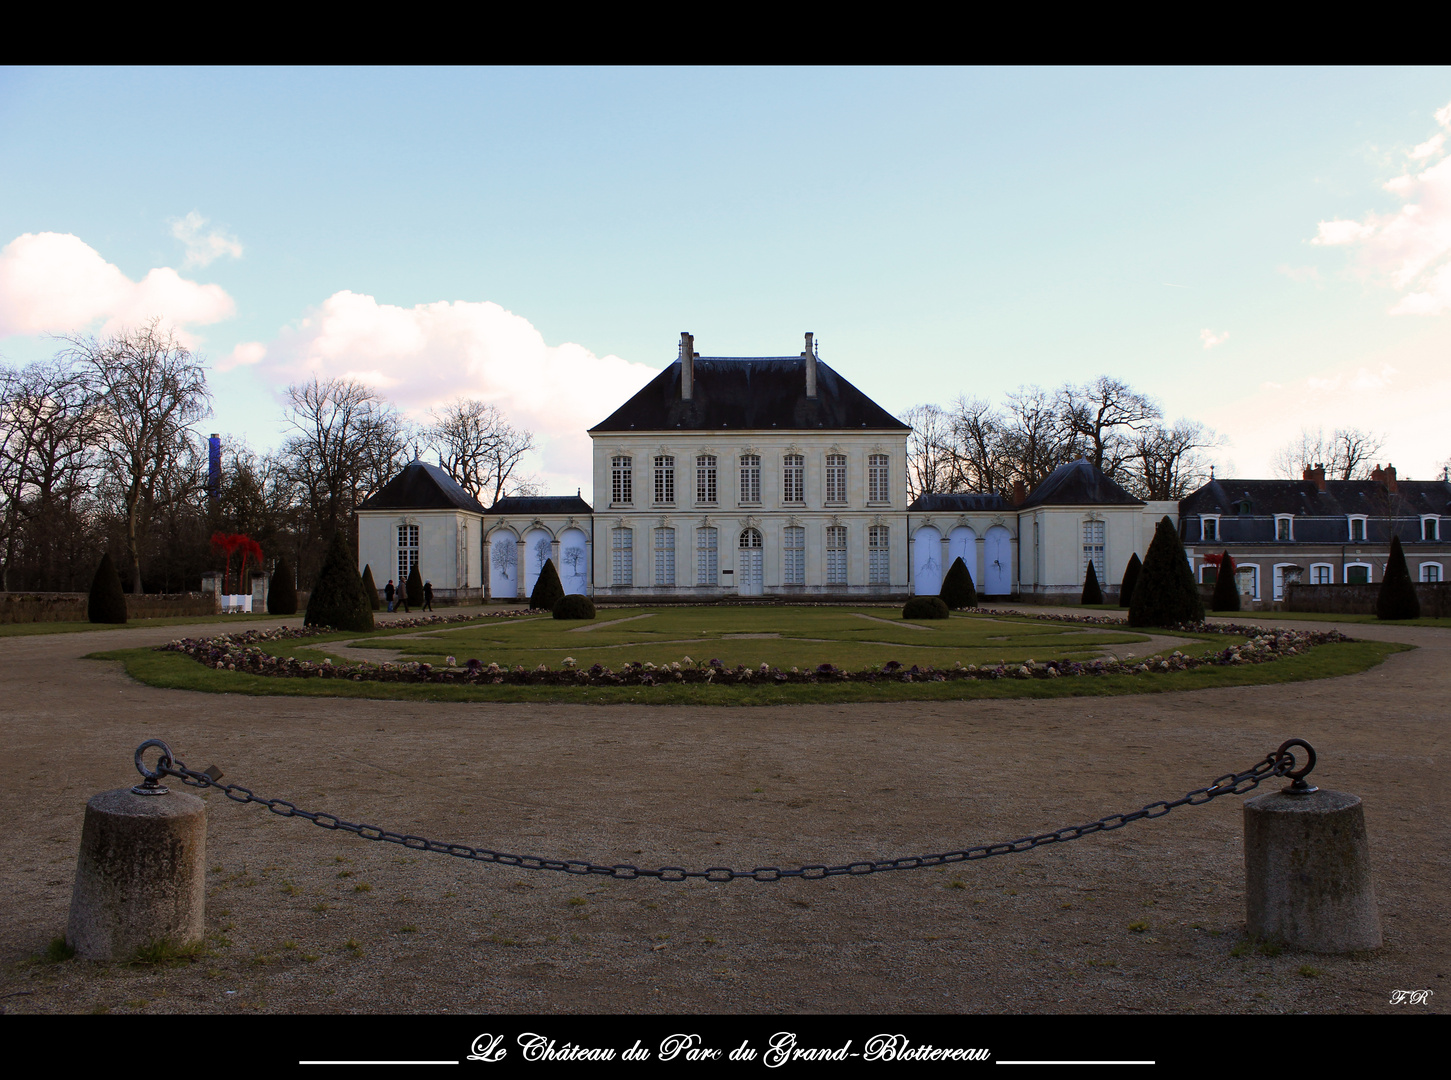 Le château du Parc du Grand-Blottereau (Nantes)